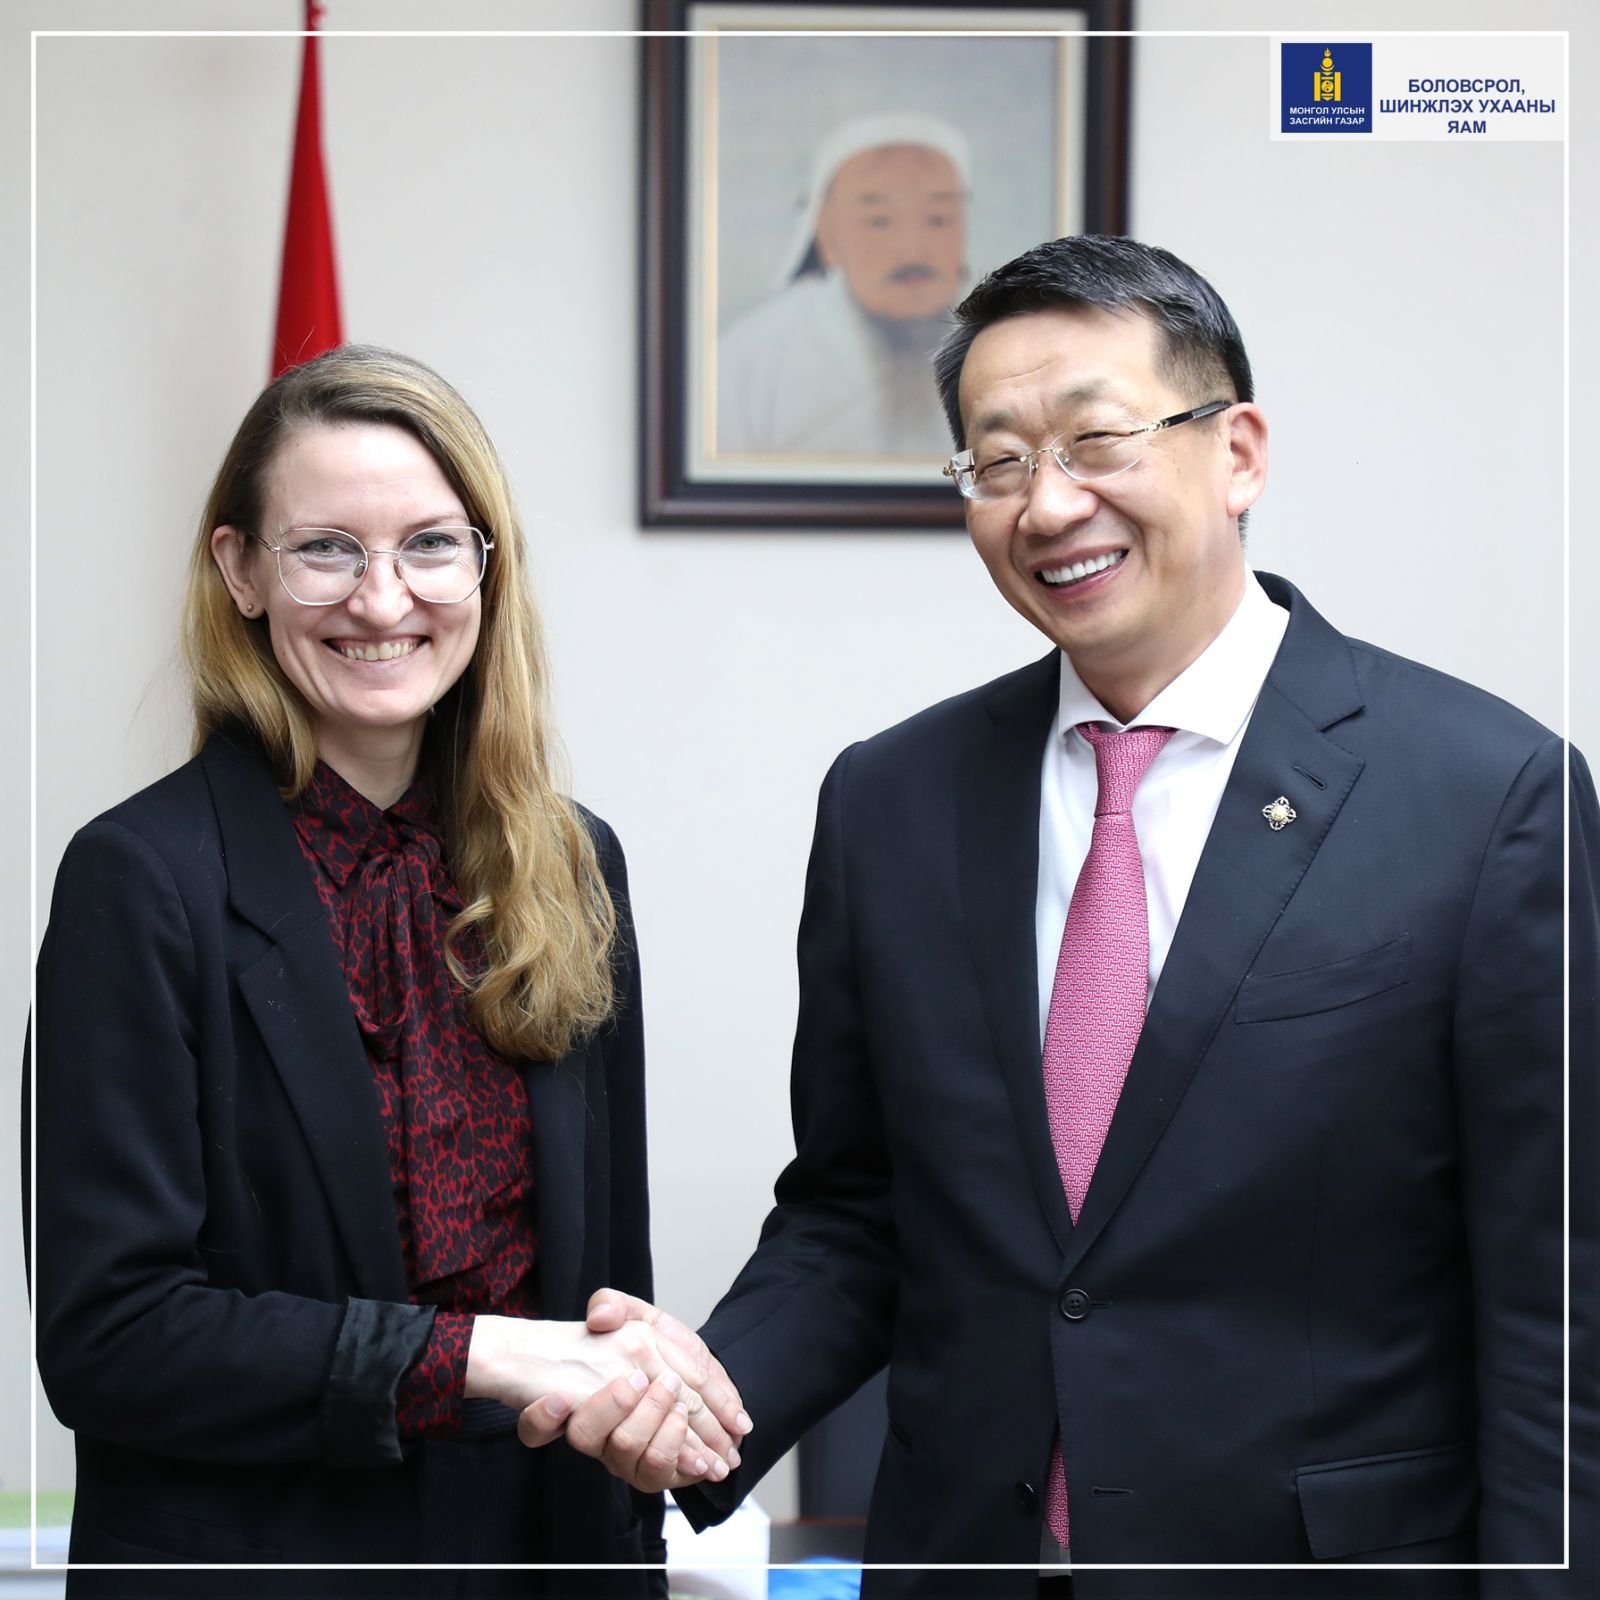  GPE буюу Боловсролын төлөөх дэлхий нийтийн түншлэл байгууллагын  ахлах зөвлөх, Монголын багийн ахлагч Лина Бенетаг хүлээн авч уулзлаа